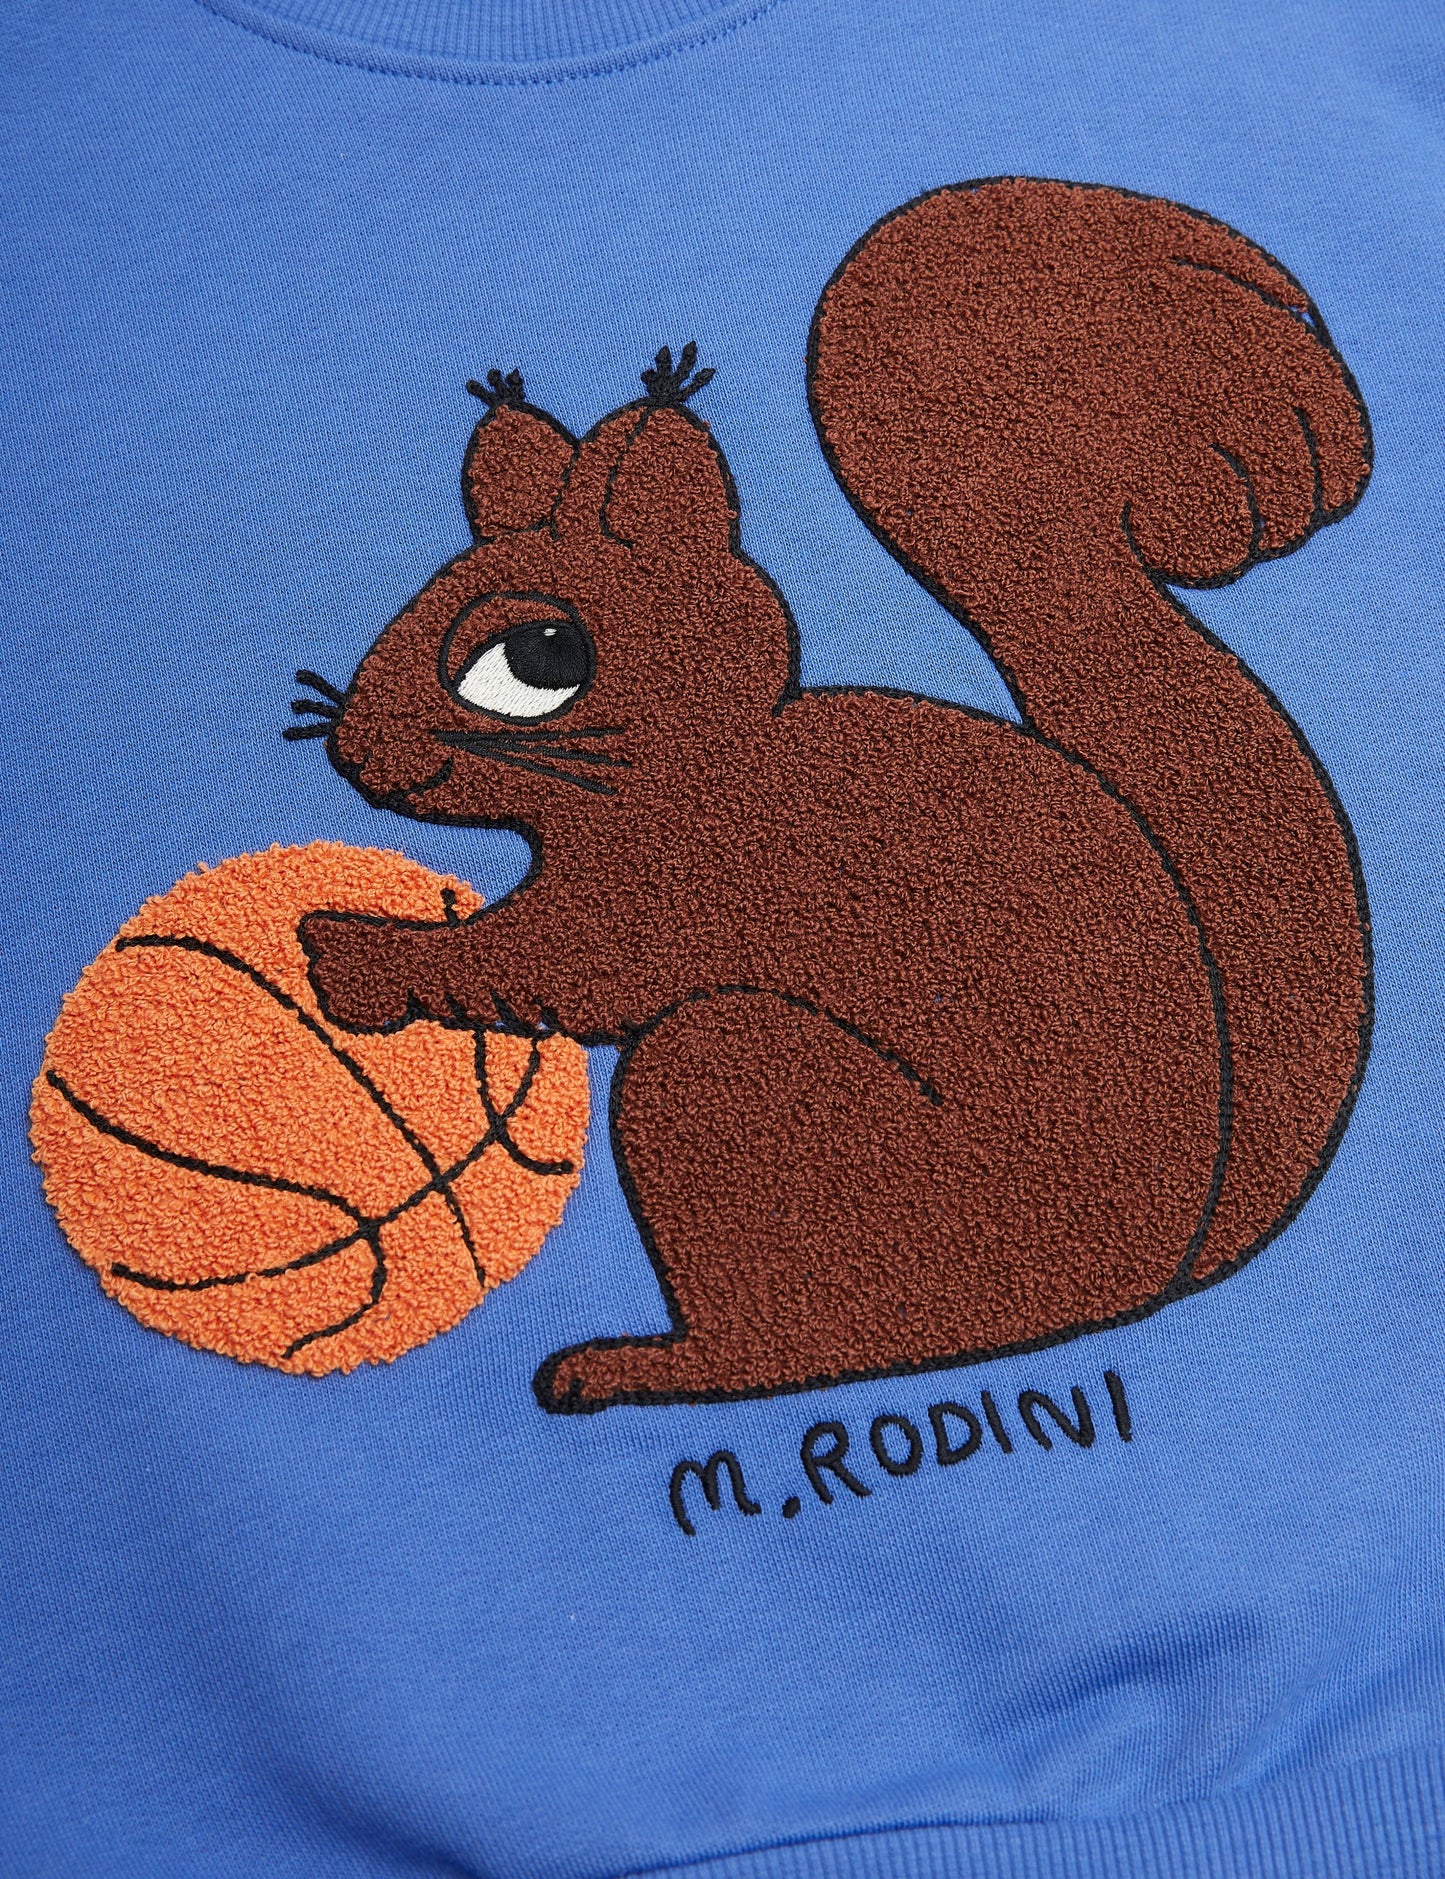 Mini Rodini Squirrels Embroidered Sweatshirt